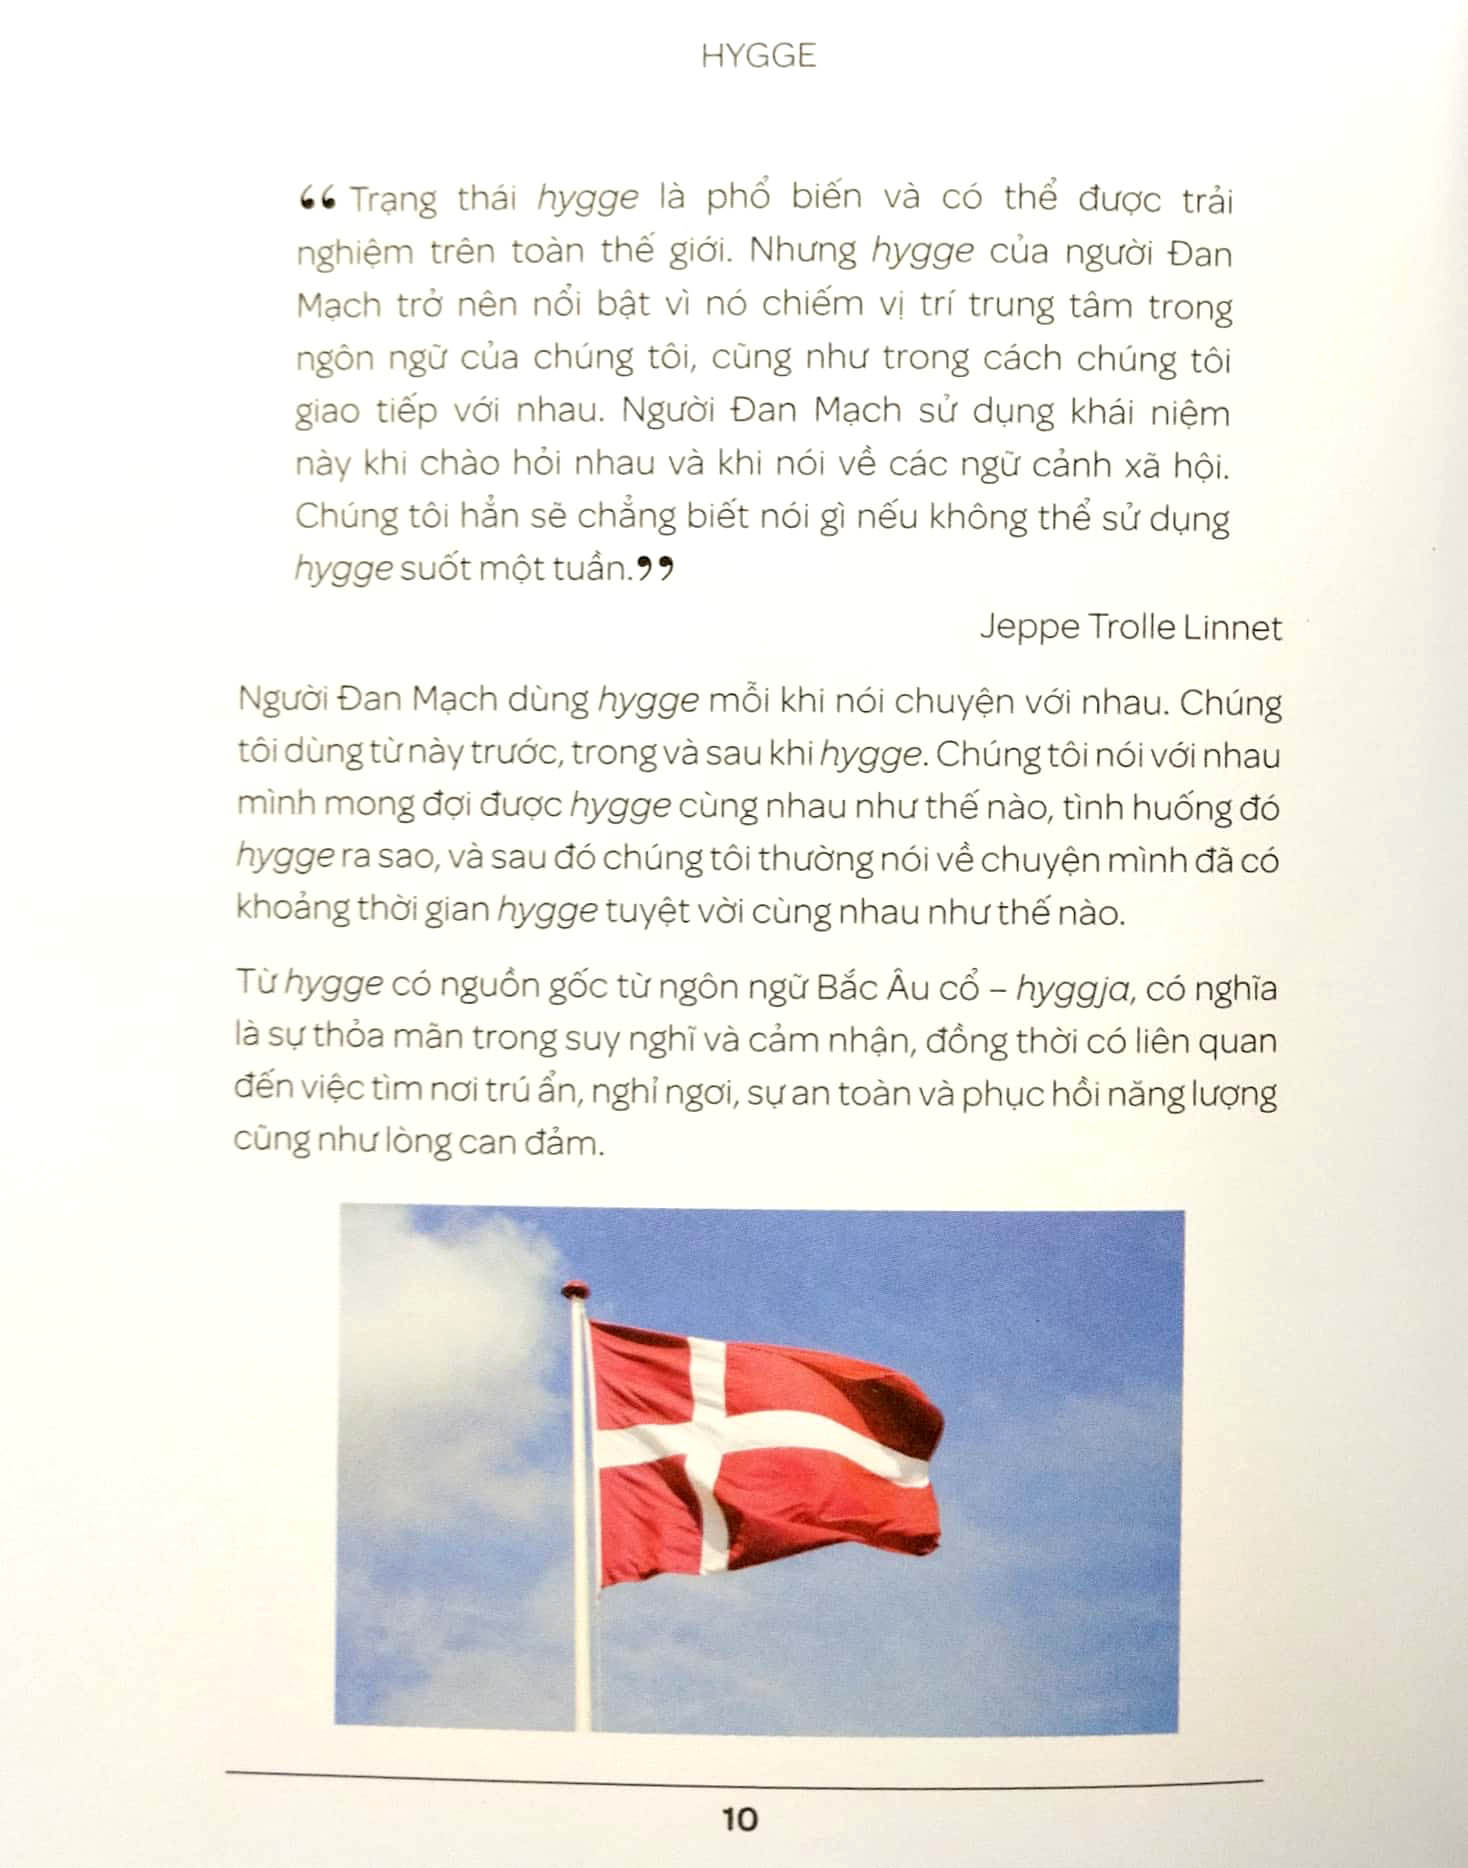 Hygge - Hạnh Phúc Từ Những Điều Nhỏ Bé - Nghệ Thuật Sống Của Người Đan Mạch - FN